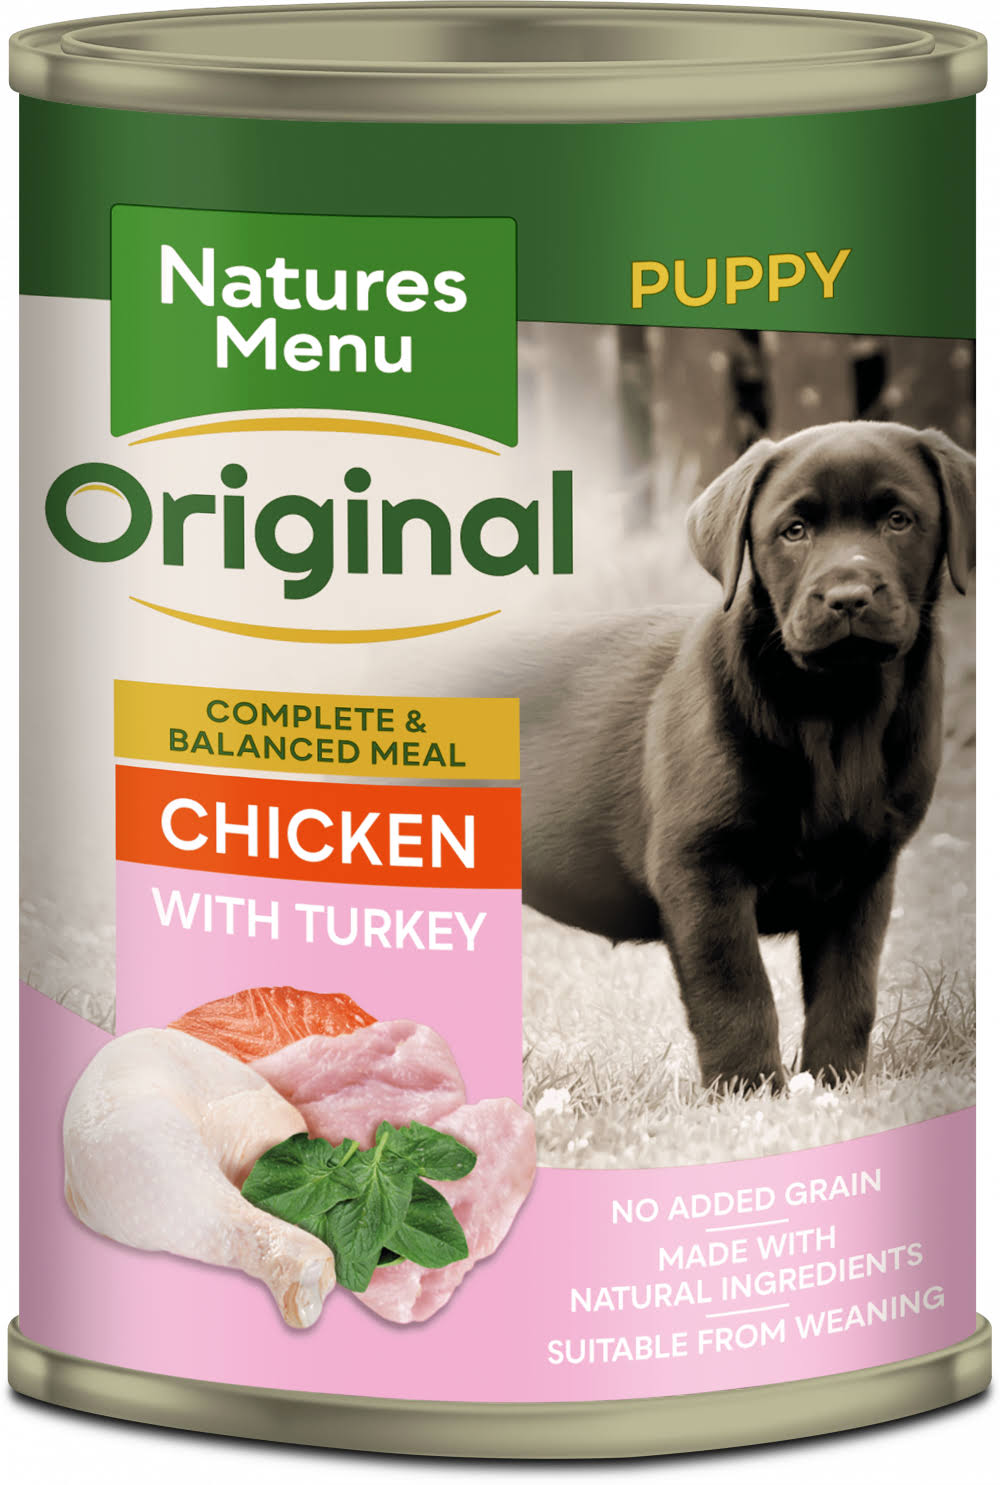 Natures Menu Junior Chicken & Turkey Puppy Food Cans 400g x 12